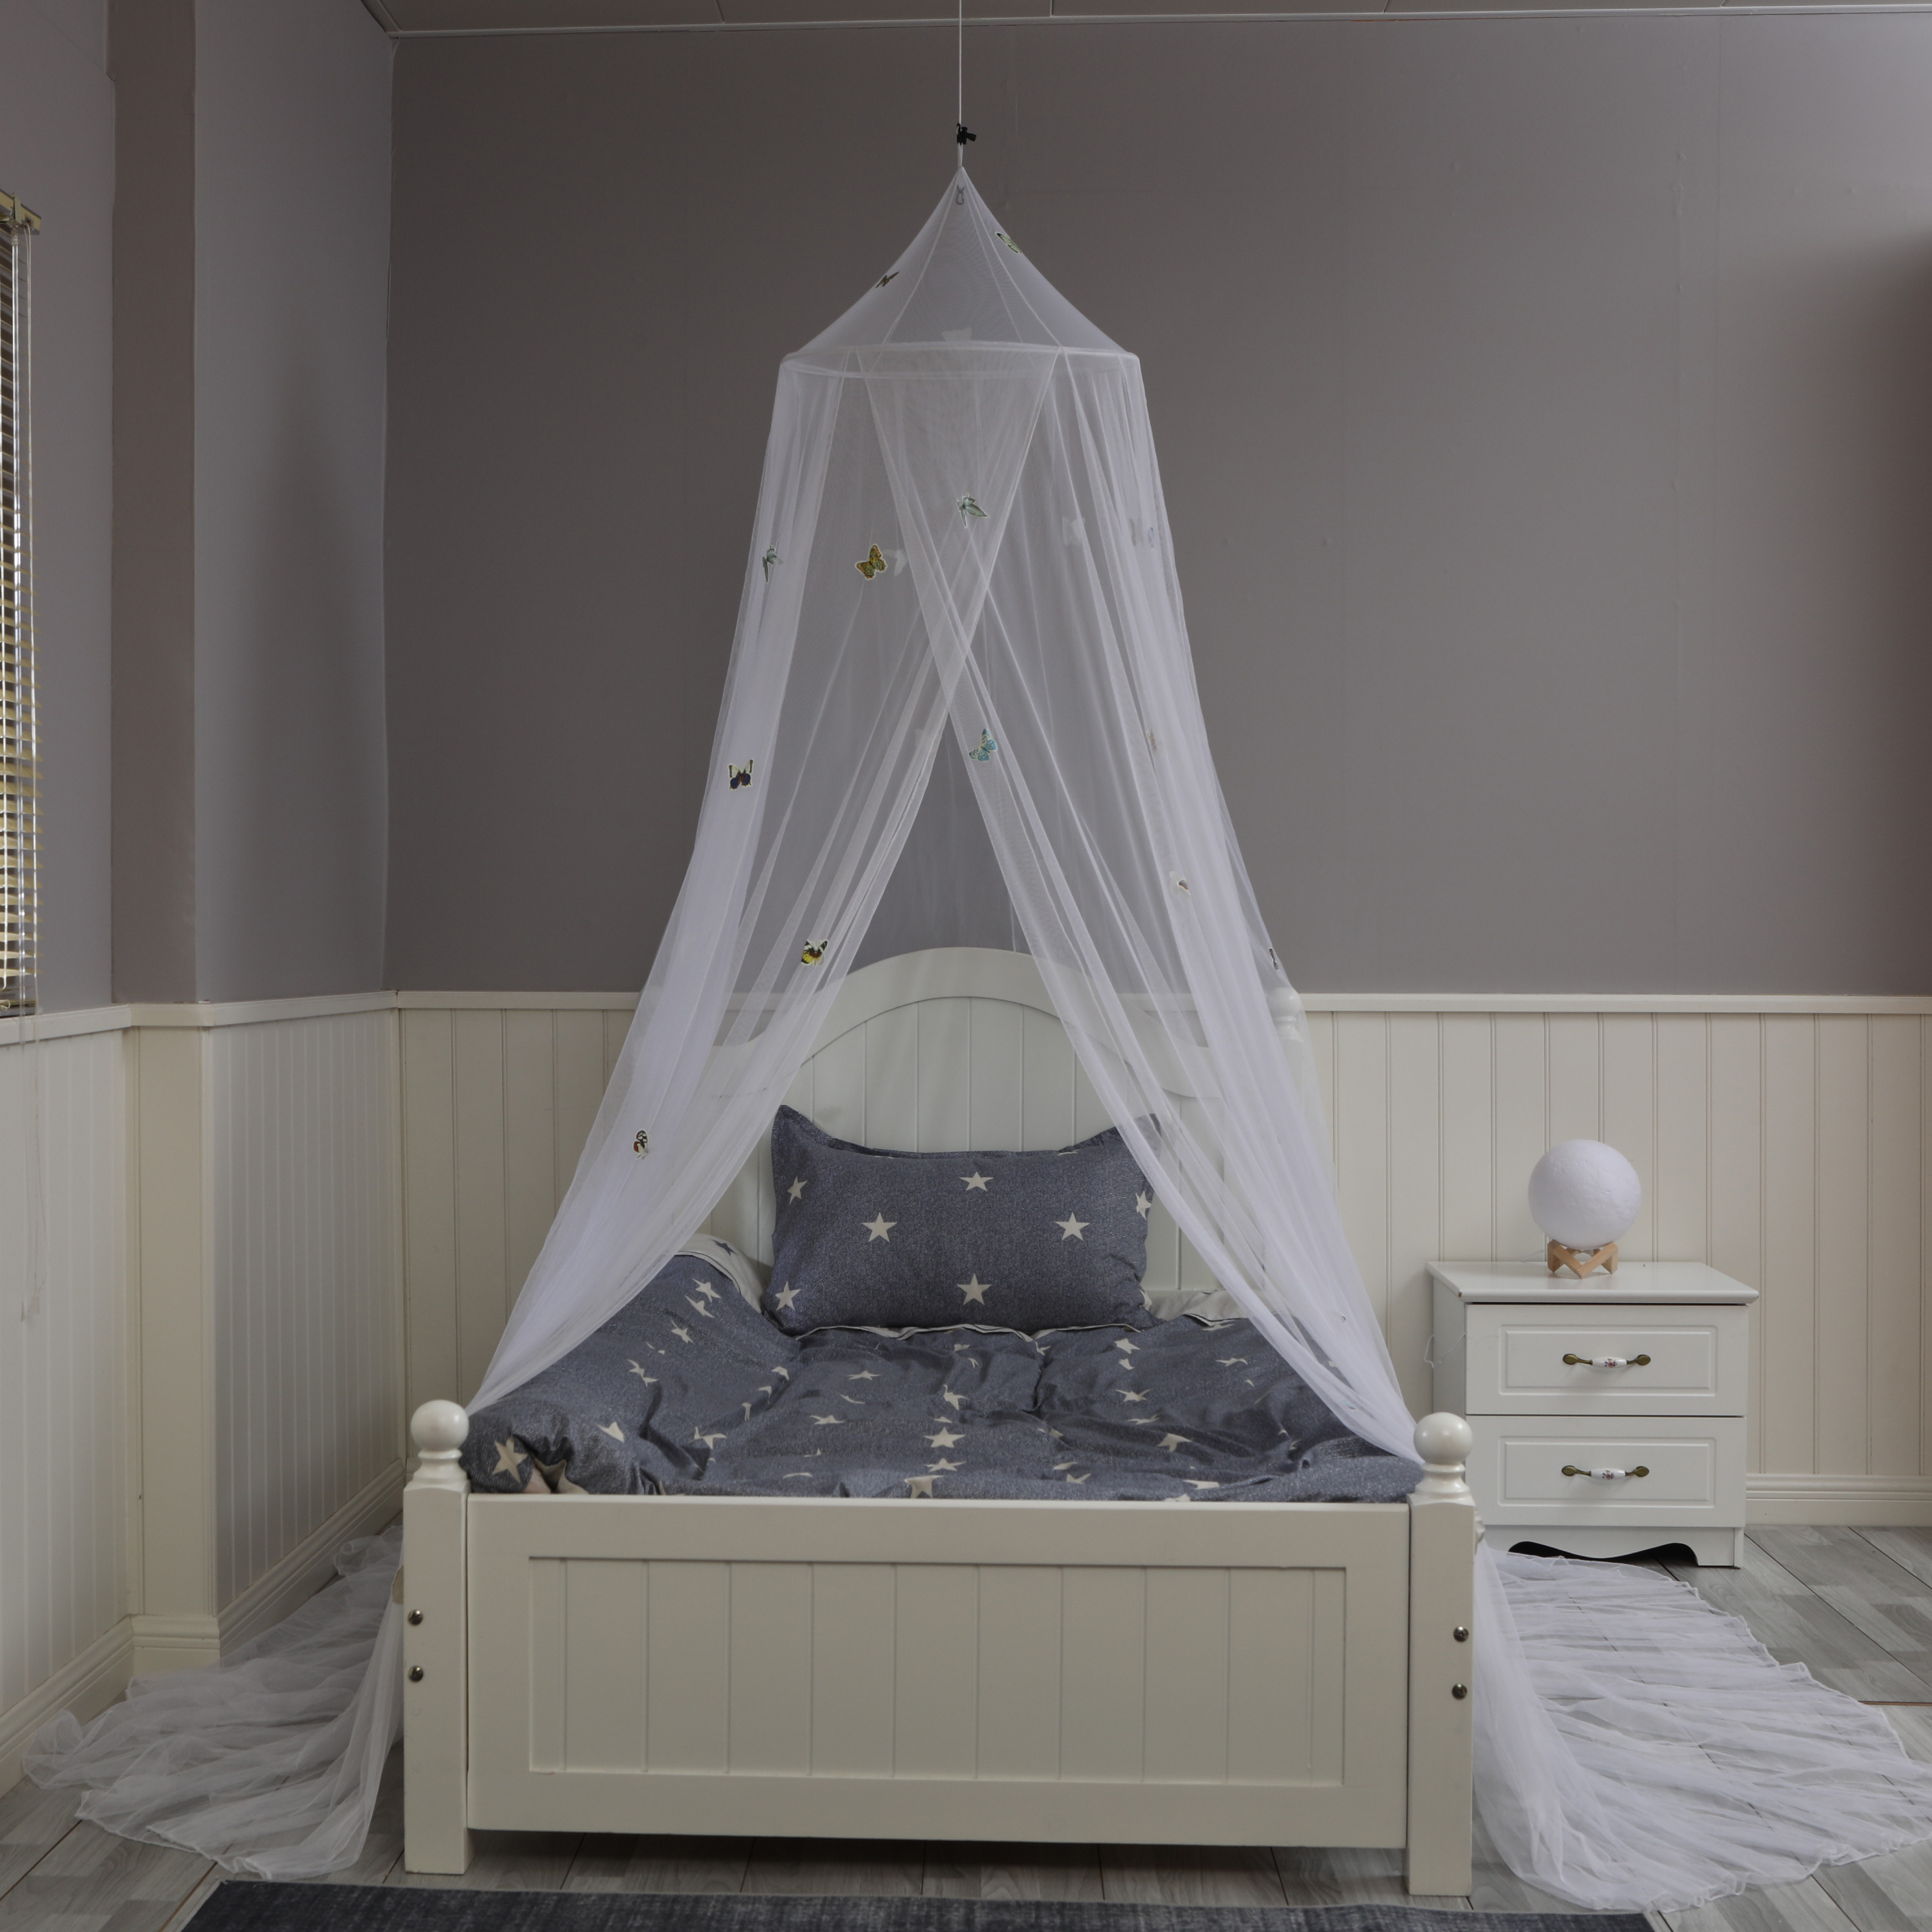 Mosquiteros colgantes redondos populares para cama con decoración de mariposas que brillan intensamente